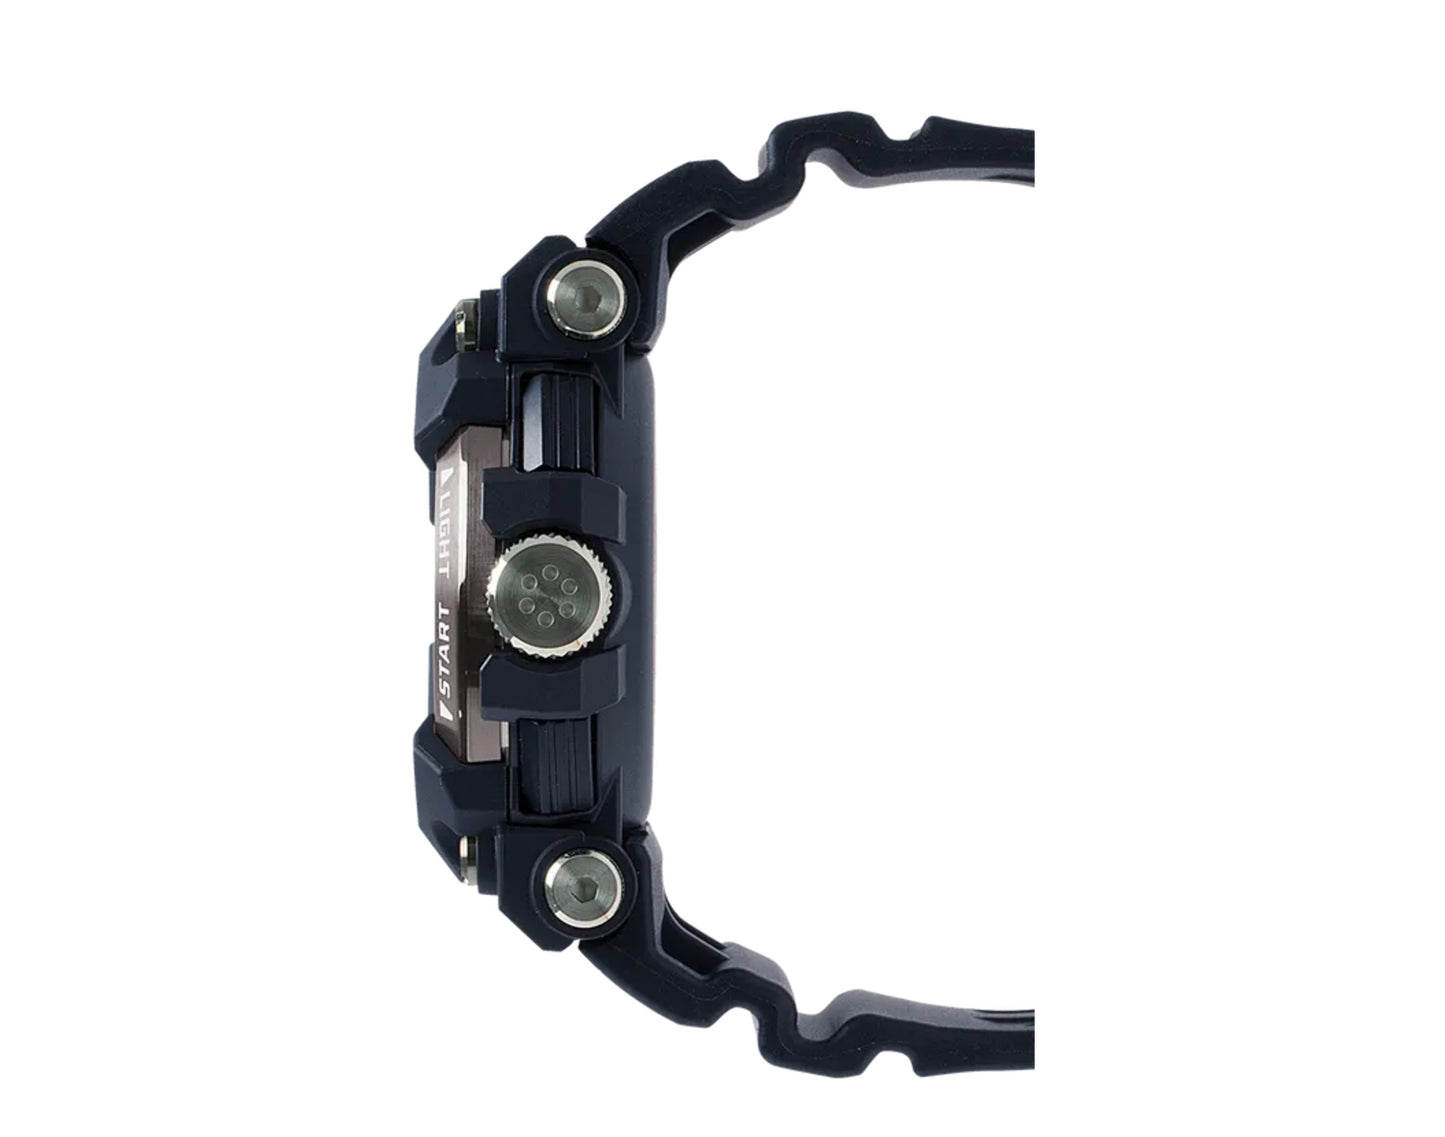 Casio G-Shock GWFA1000 FrogMan Master of G ISO Analog Black Watch GWFA1000-1A